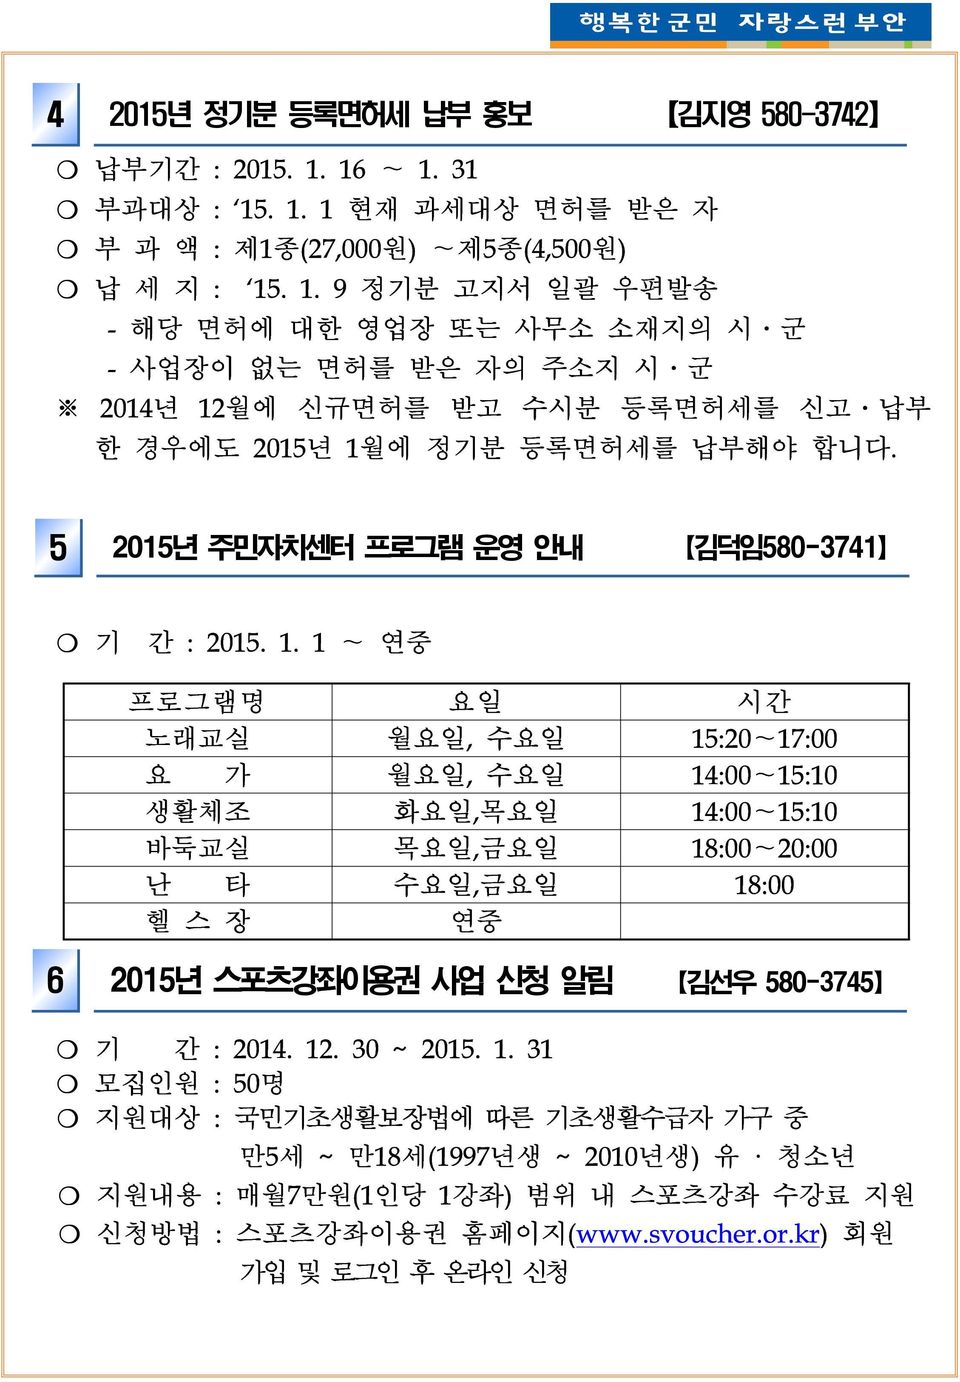 5 2015년 주민자치센터 프로그램 운영 안내 김덕임580-3741 기 간 : 2015. 1.